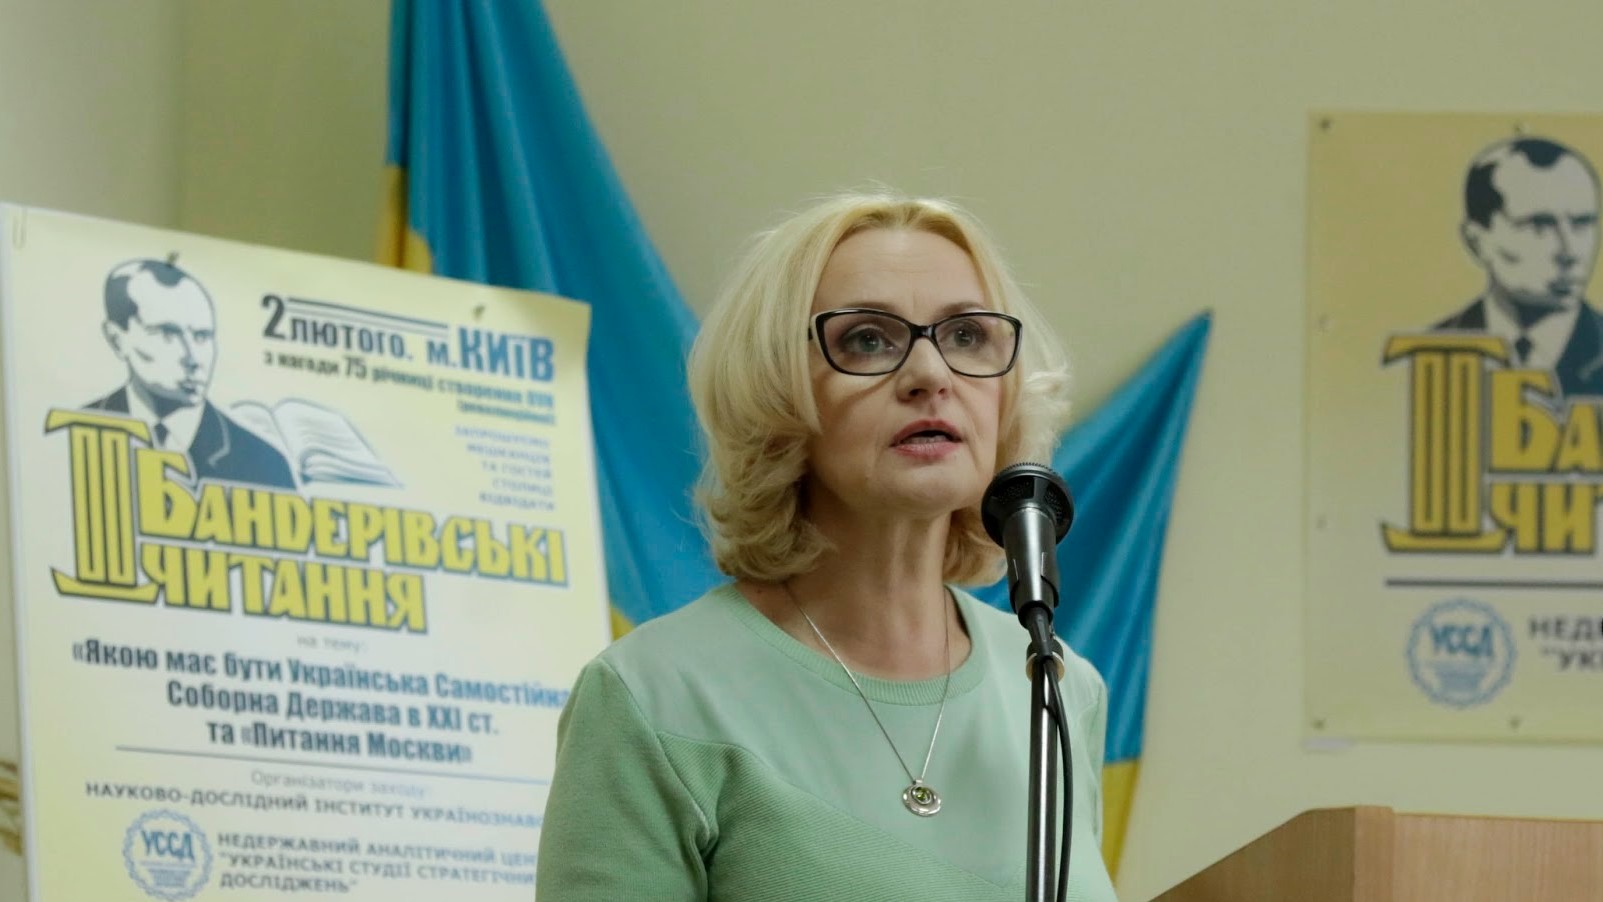 Ирина Фарион на бандеровских чтениях в 2015 году